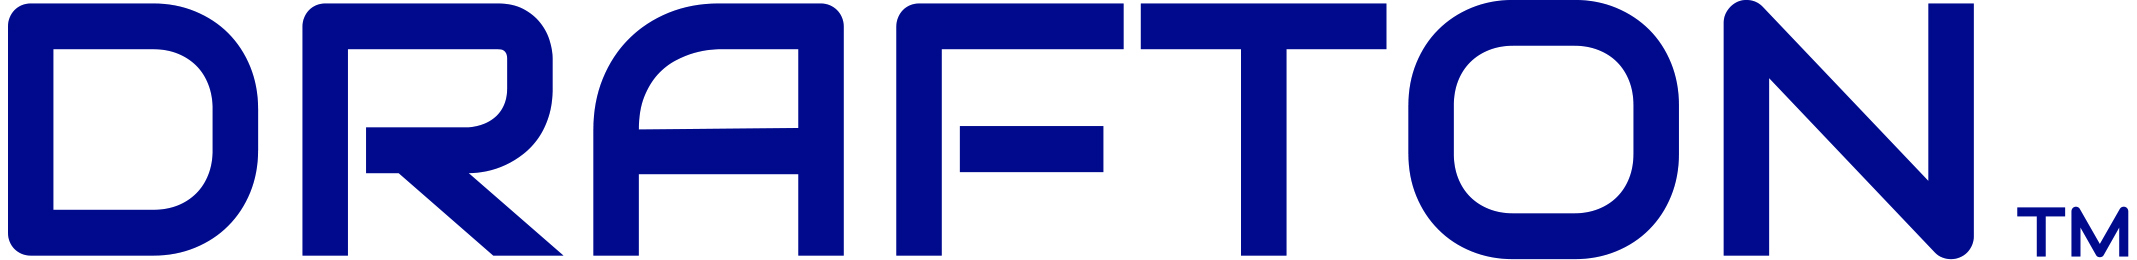 DRAFTON logo CMYK